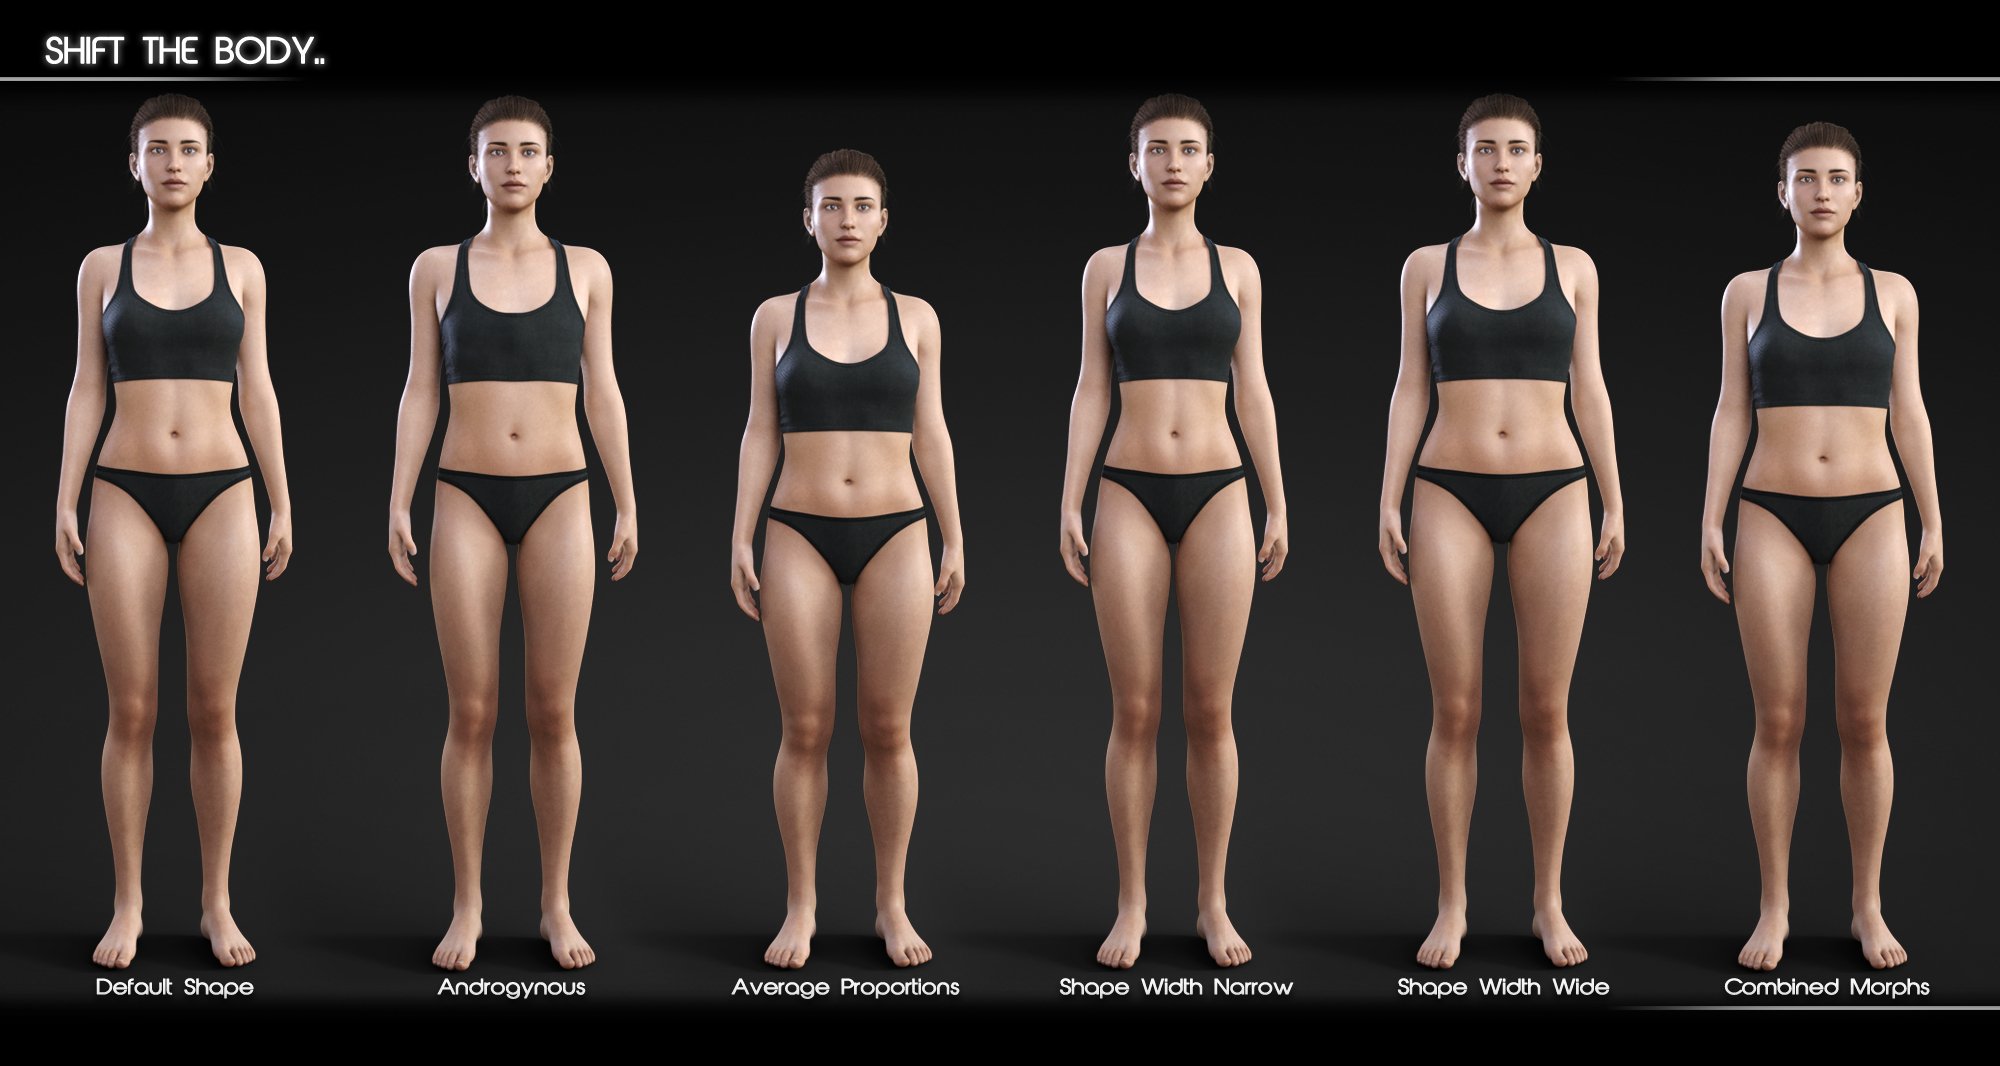 Shape Shift for Genesis 8 Female(s) by: Zev0, 3D Models by Daz 3D